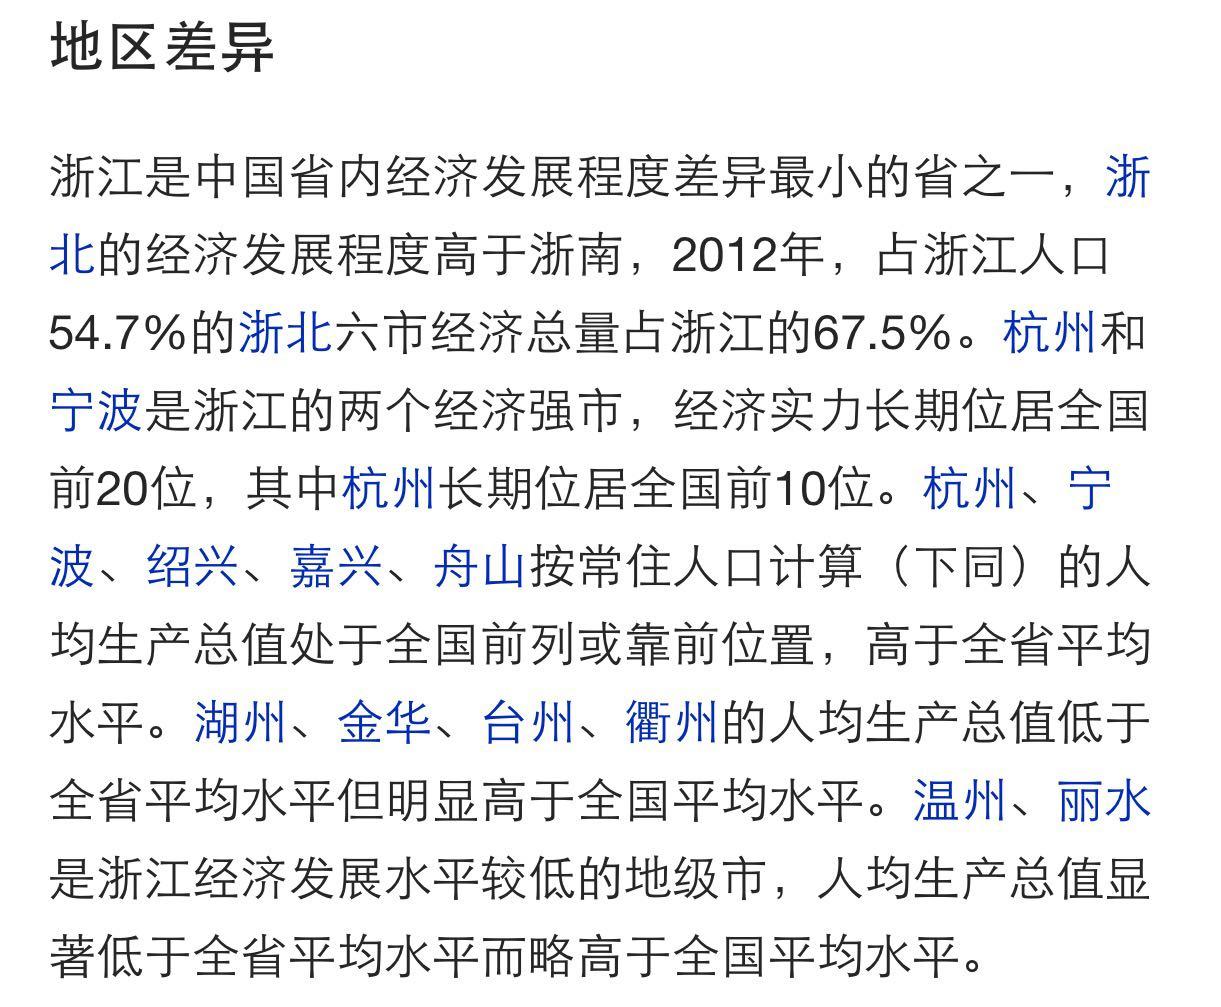 江苏的人均GDP 已经超越浙江,为什么感觉浙江